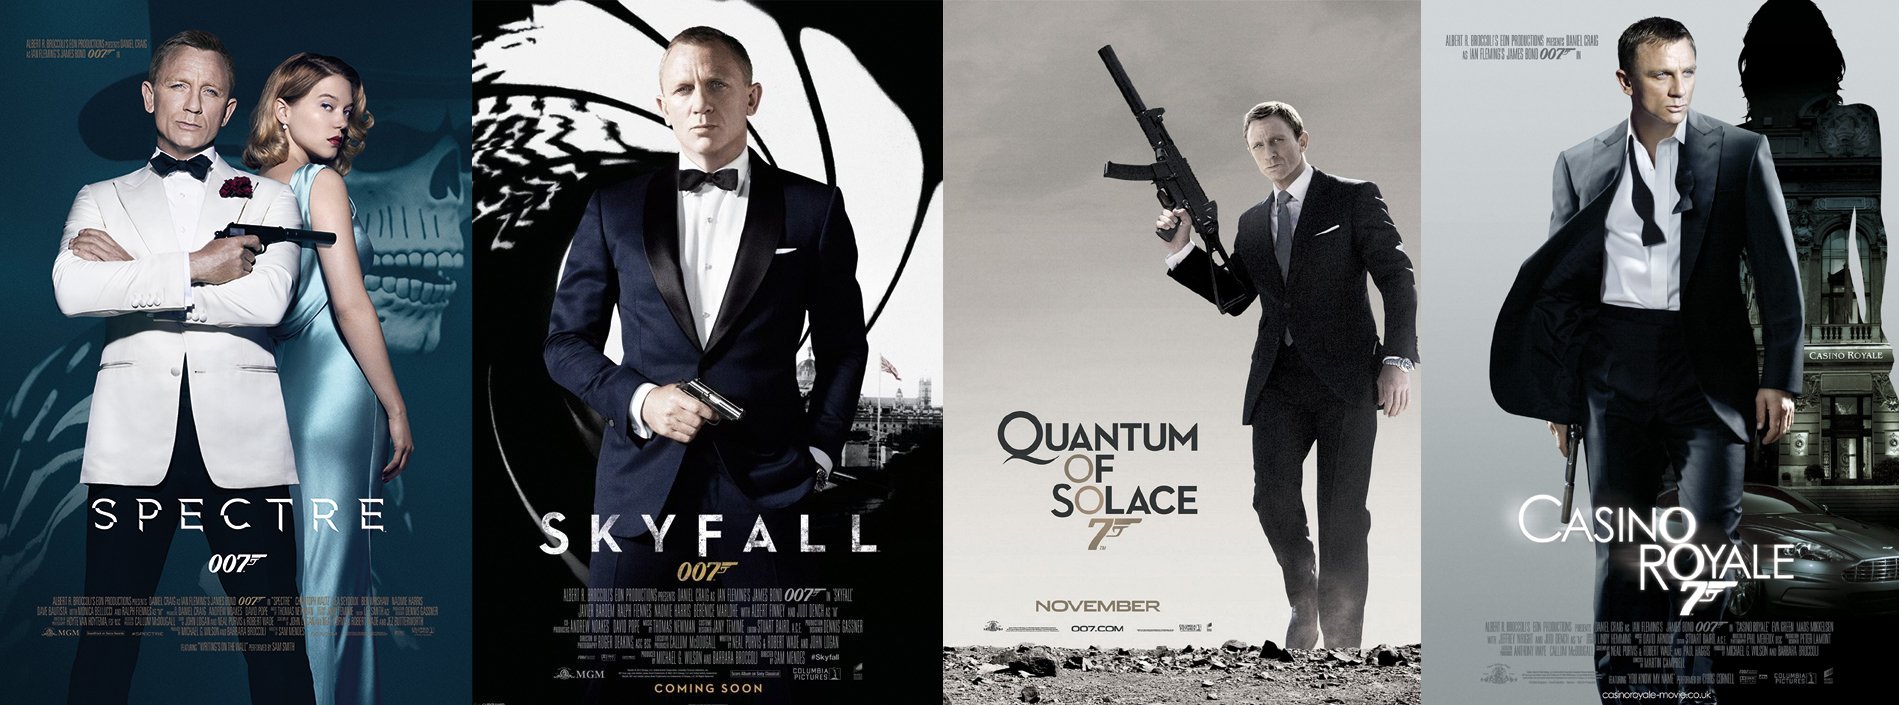 007首映周末票房  打破系列电影纪录